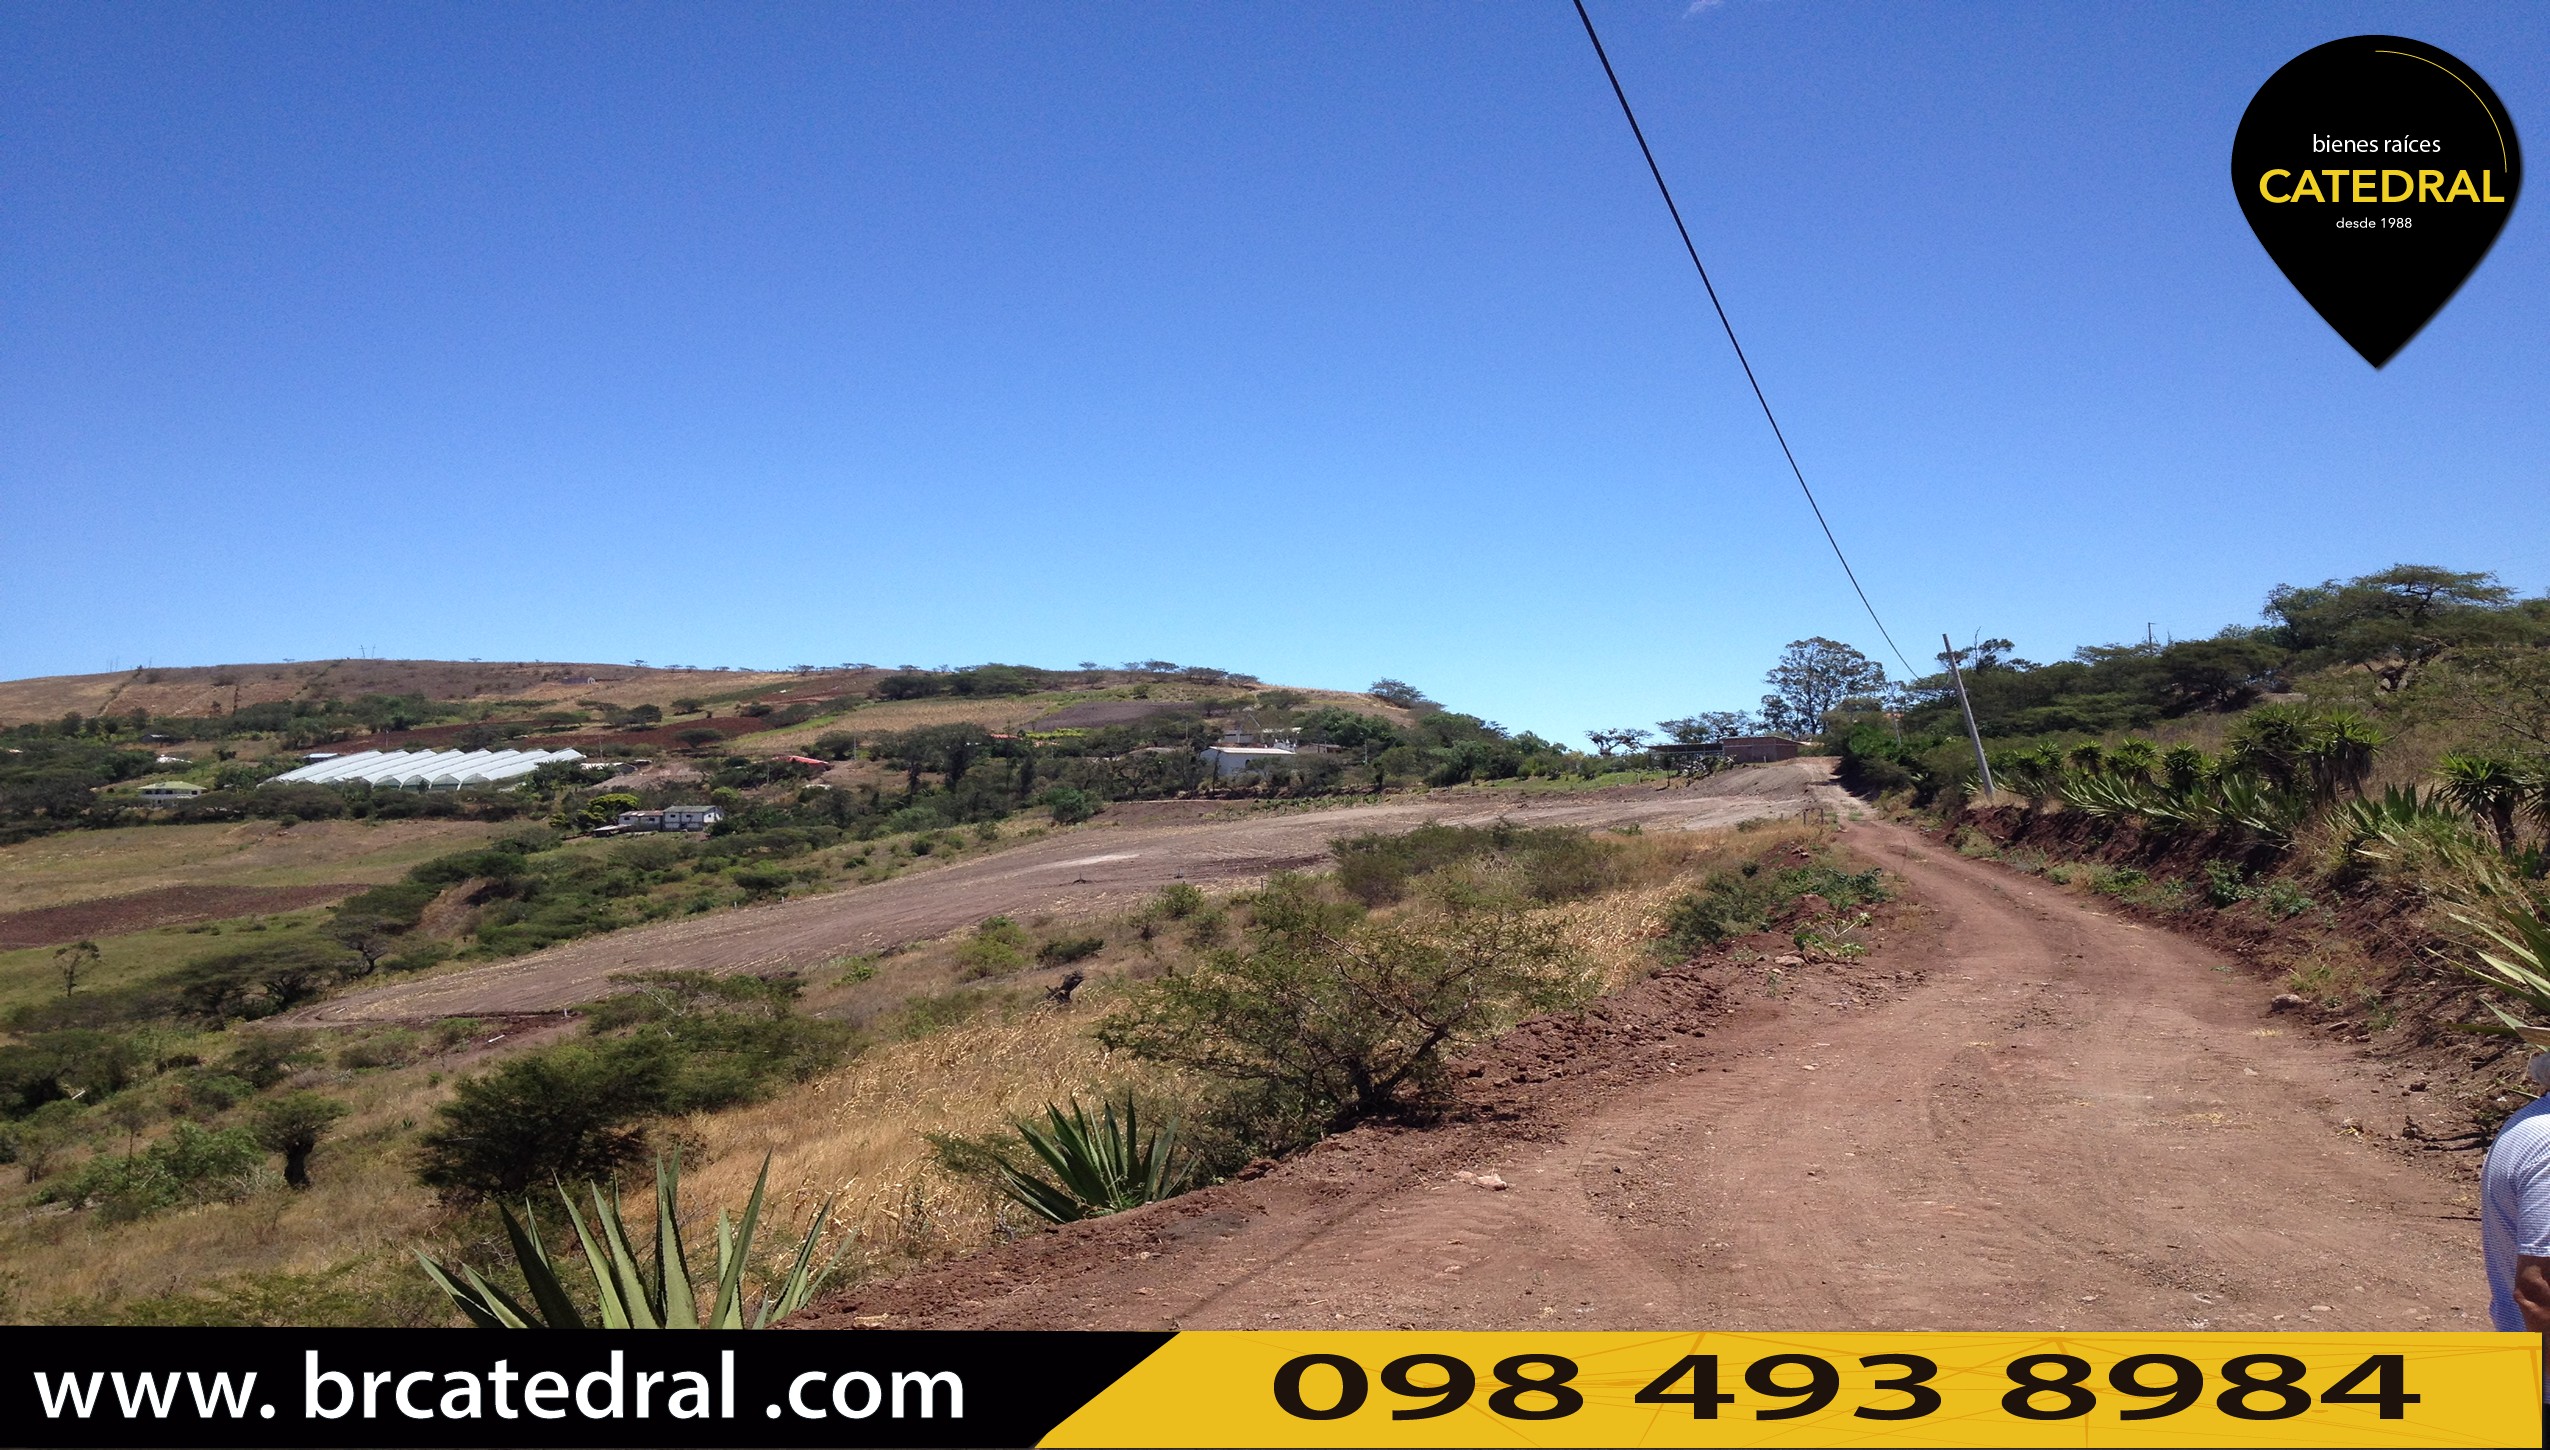 Sitio Solar Terreno de Venta en Cuenca Ecuador sector Yunguilla - Santa Isabel